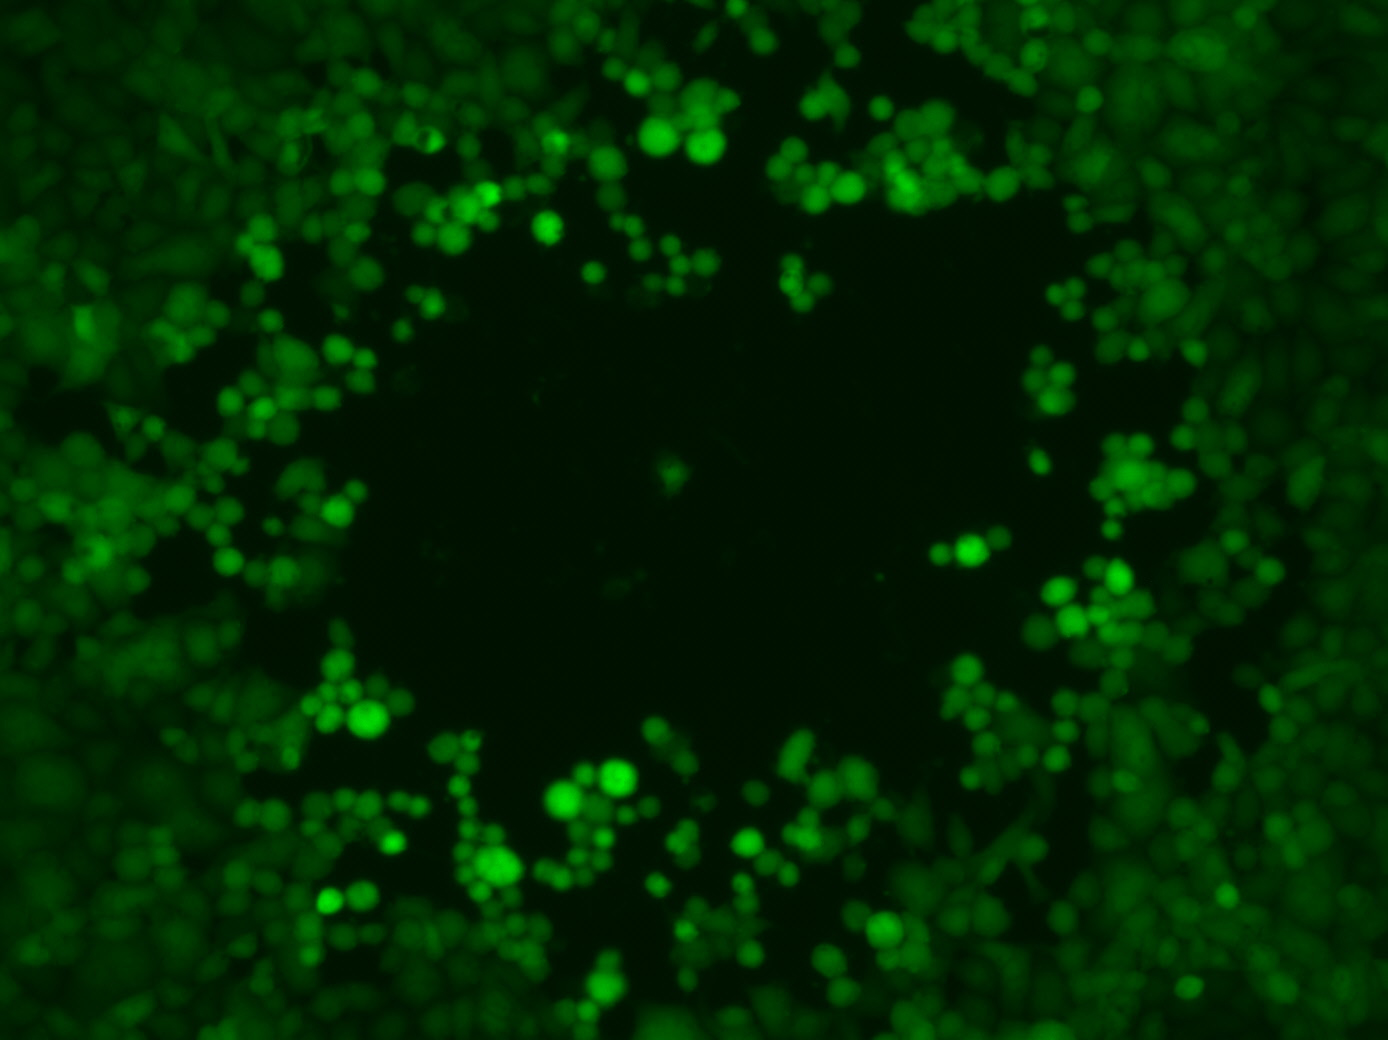 Mikroskopische Aufnahme der Plaquebildung durch HSV1-Viren (grün fluoreszierend).